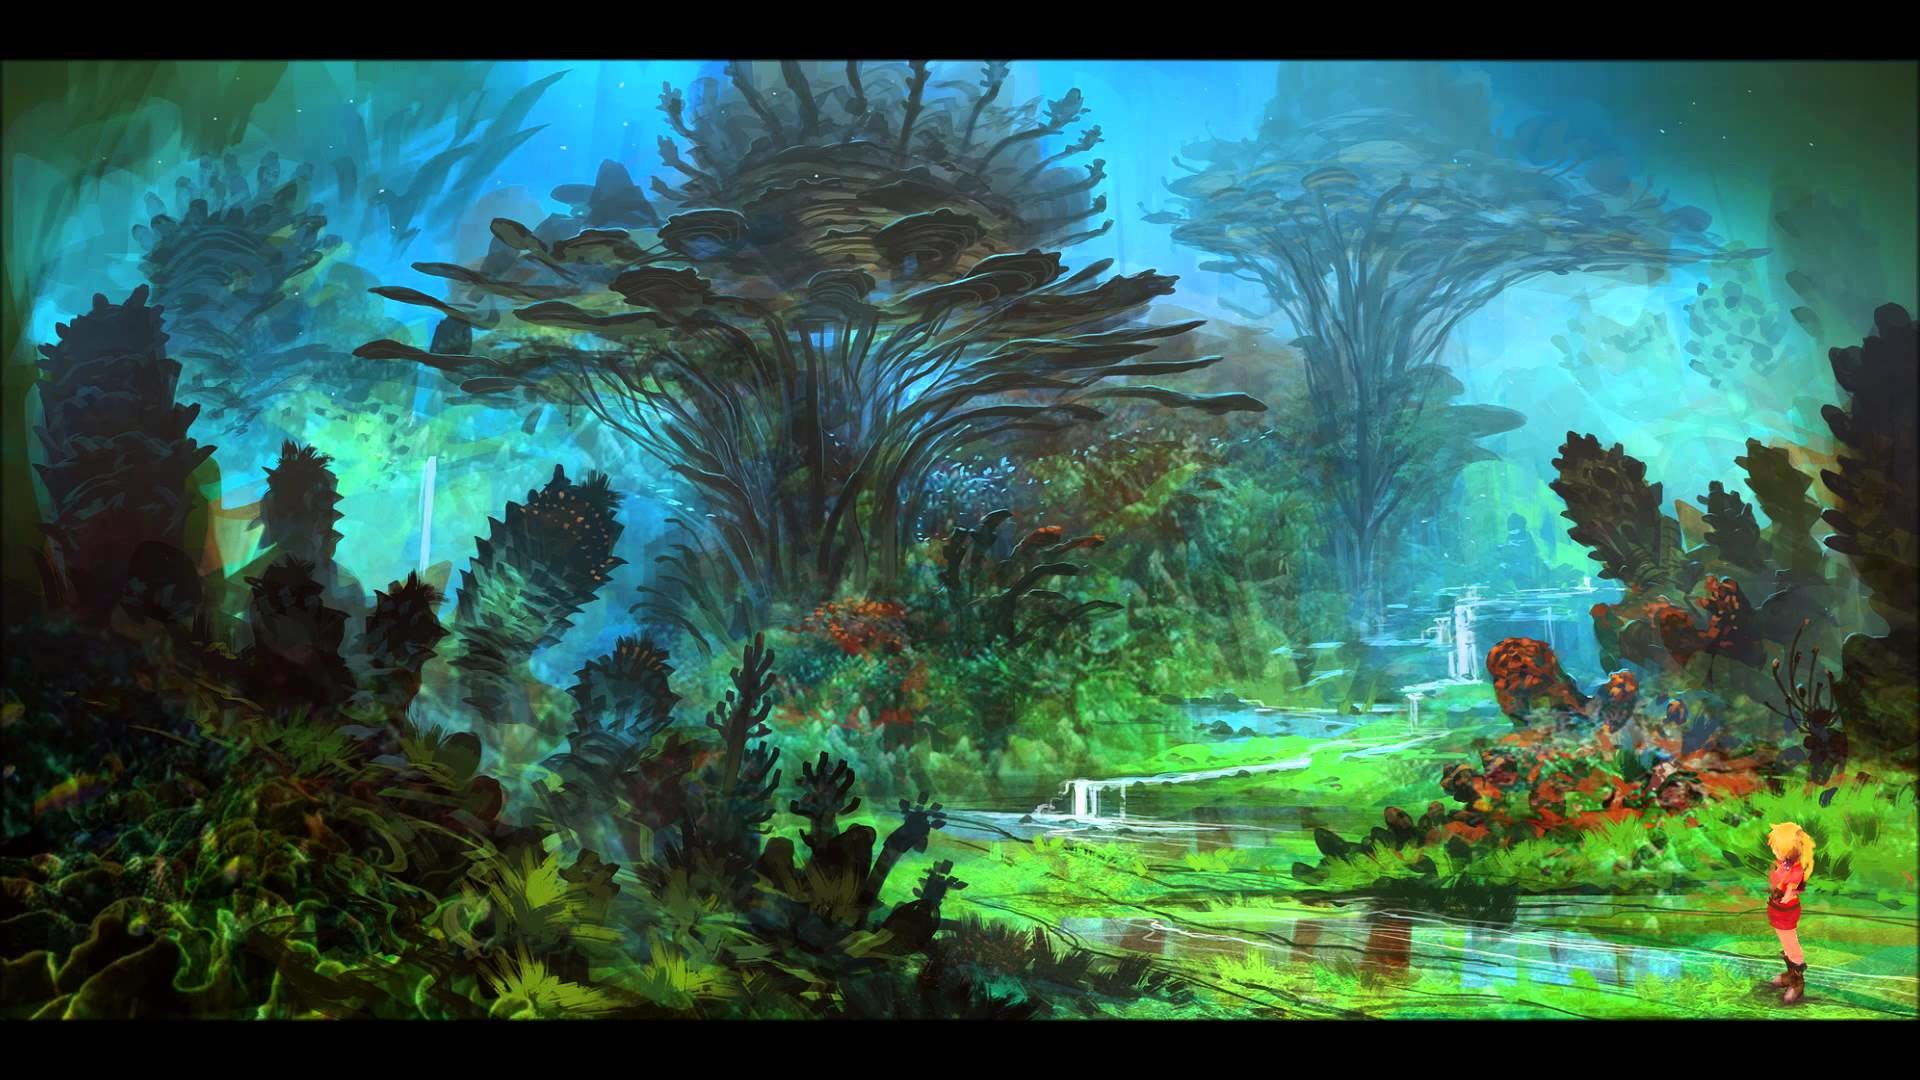 fond d'écran chrono cross,la nature,la peinture,jungle,arbre,paysage